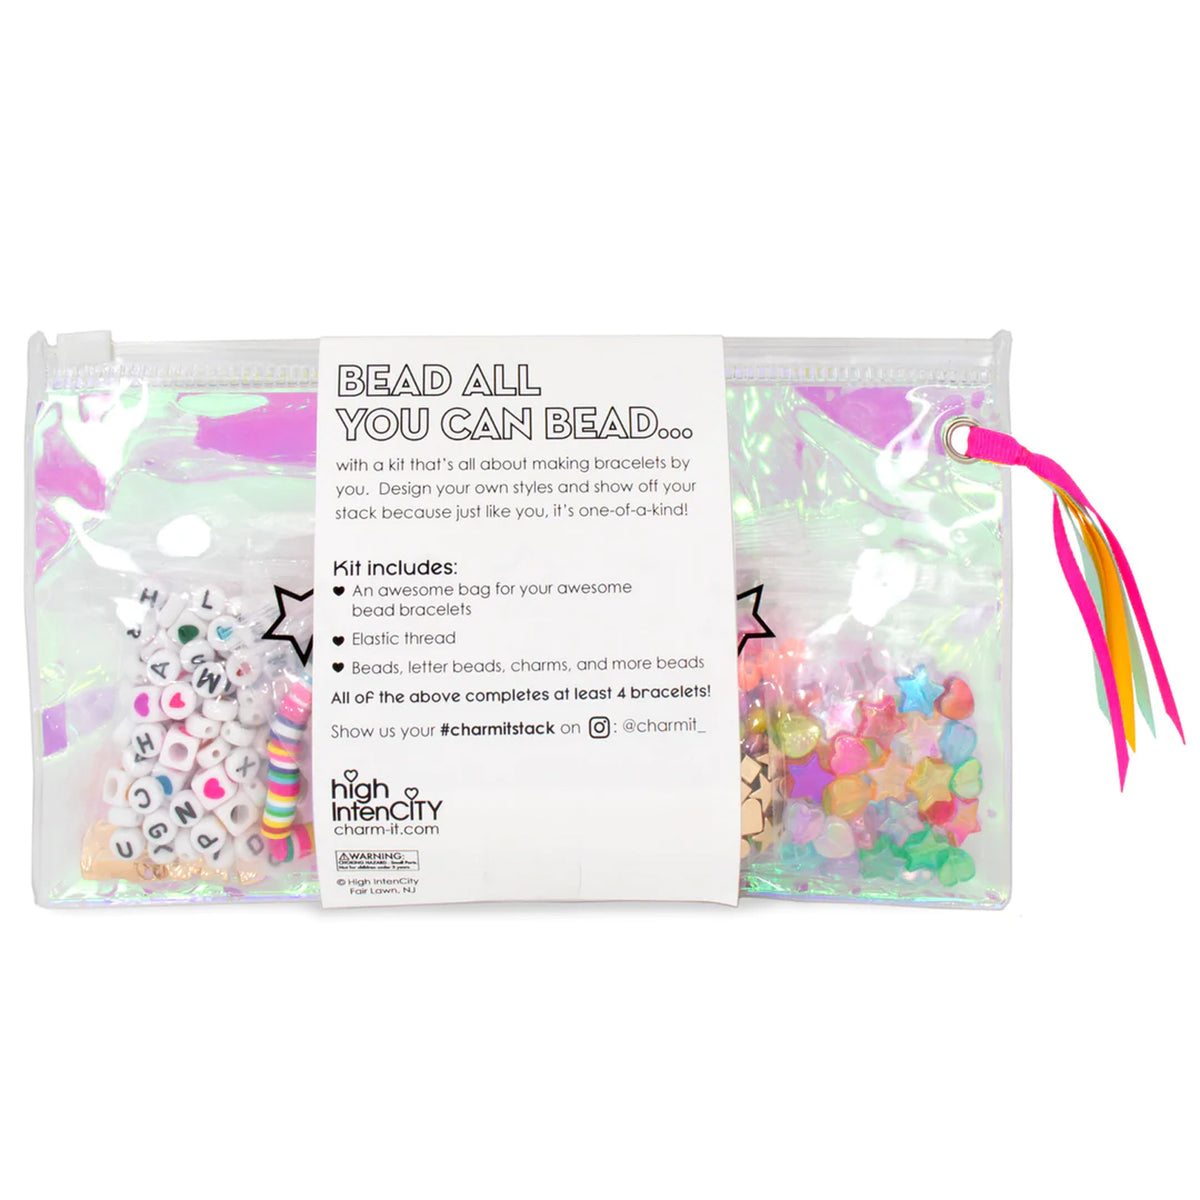 CHARM IT! - Rainbow Bead Kit